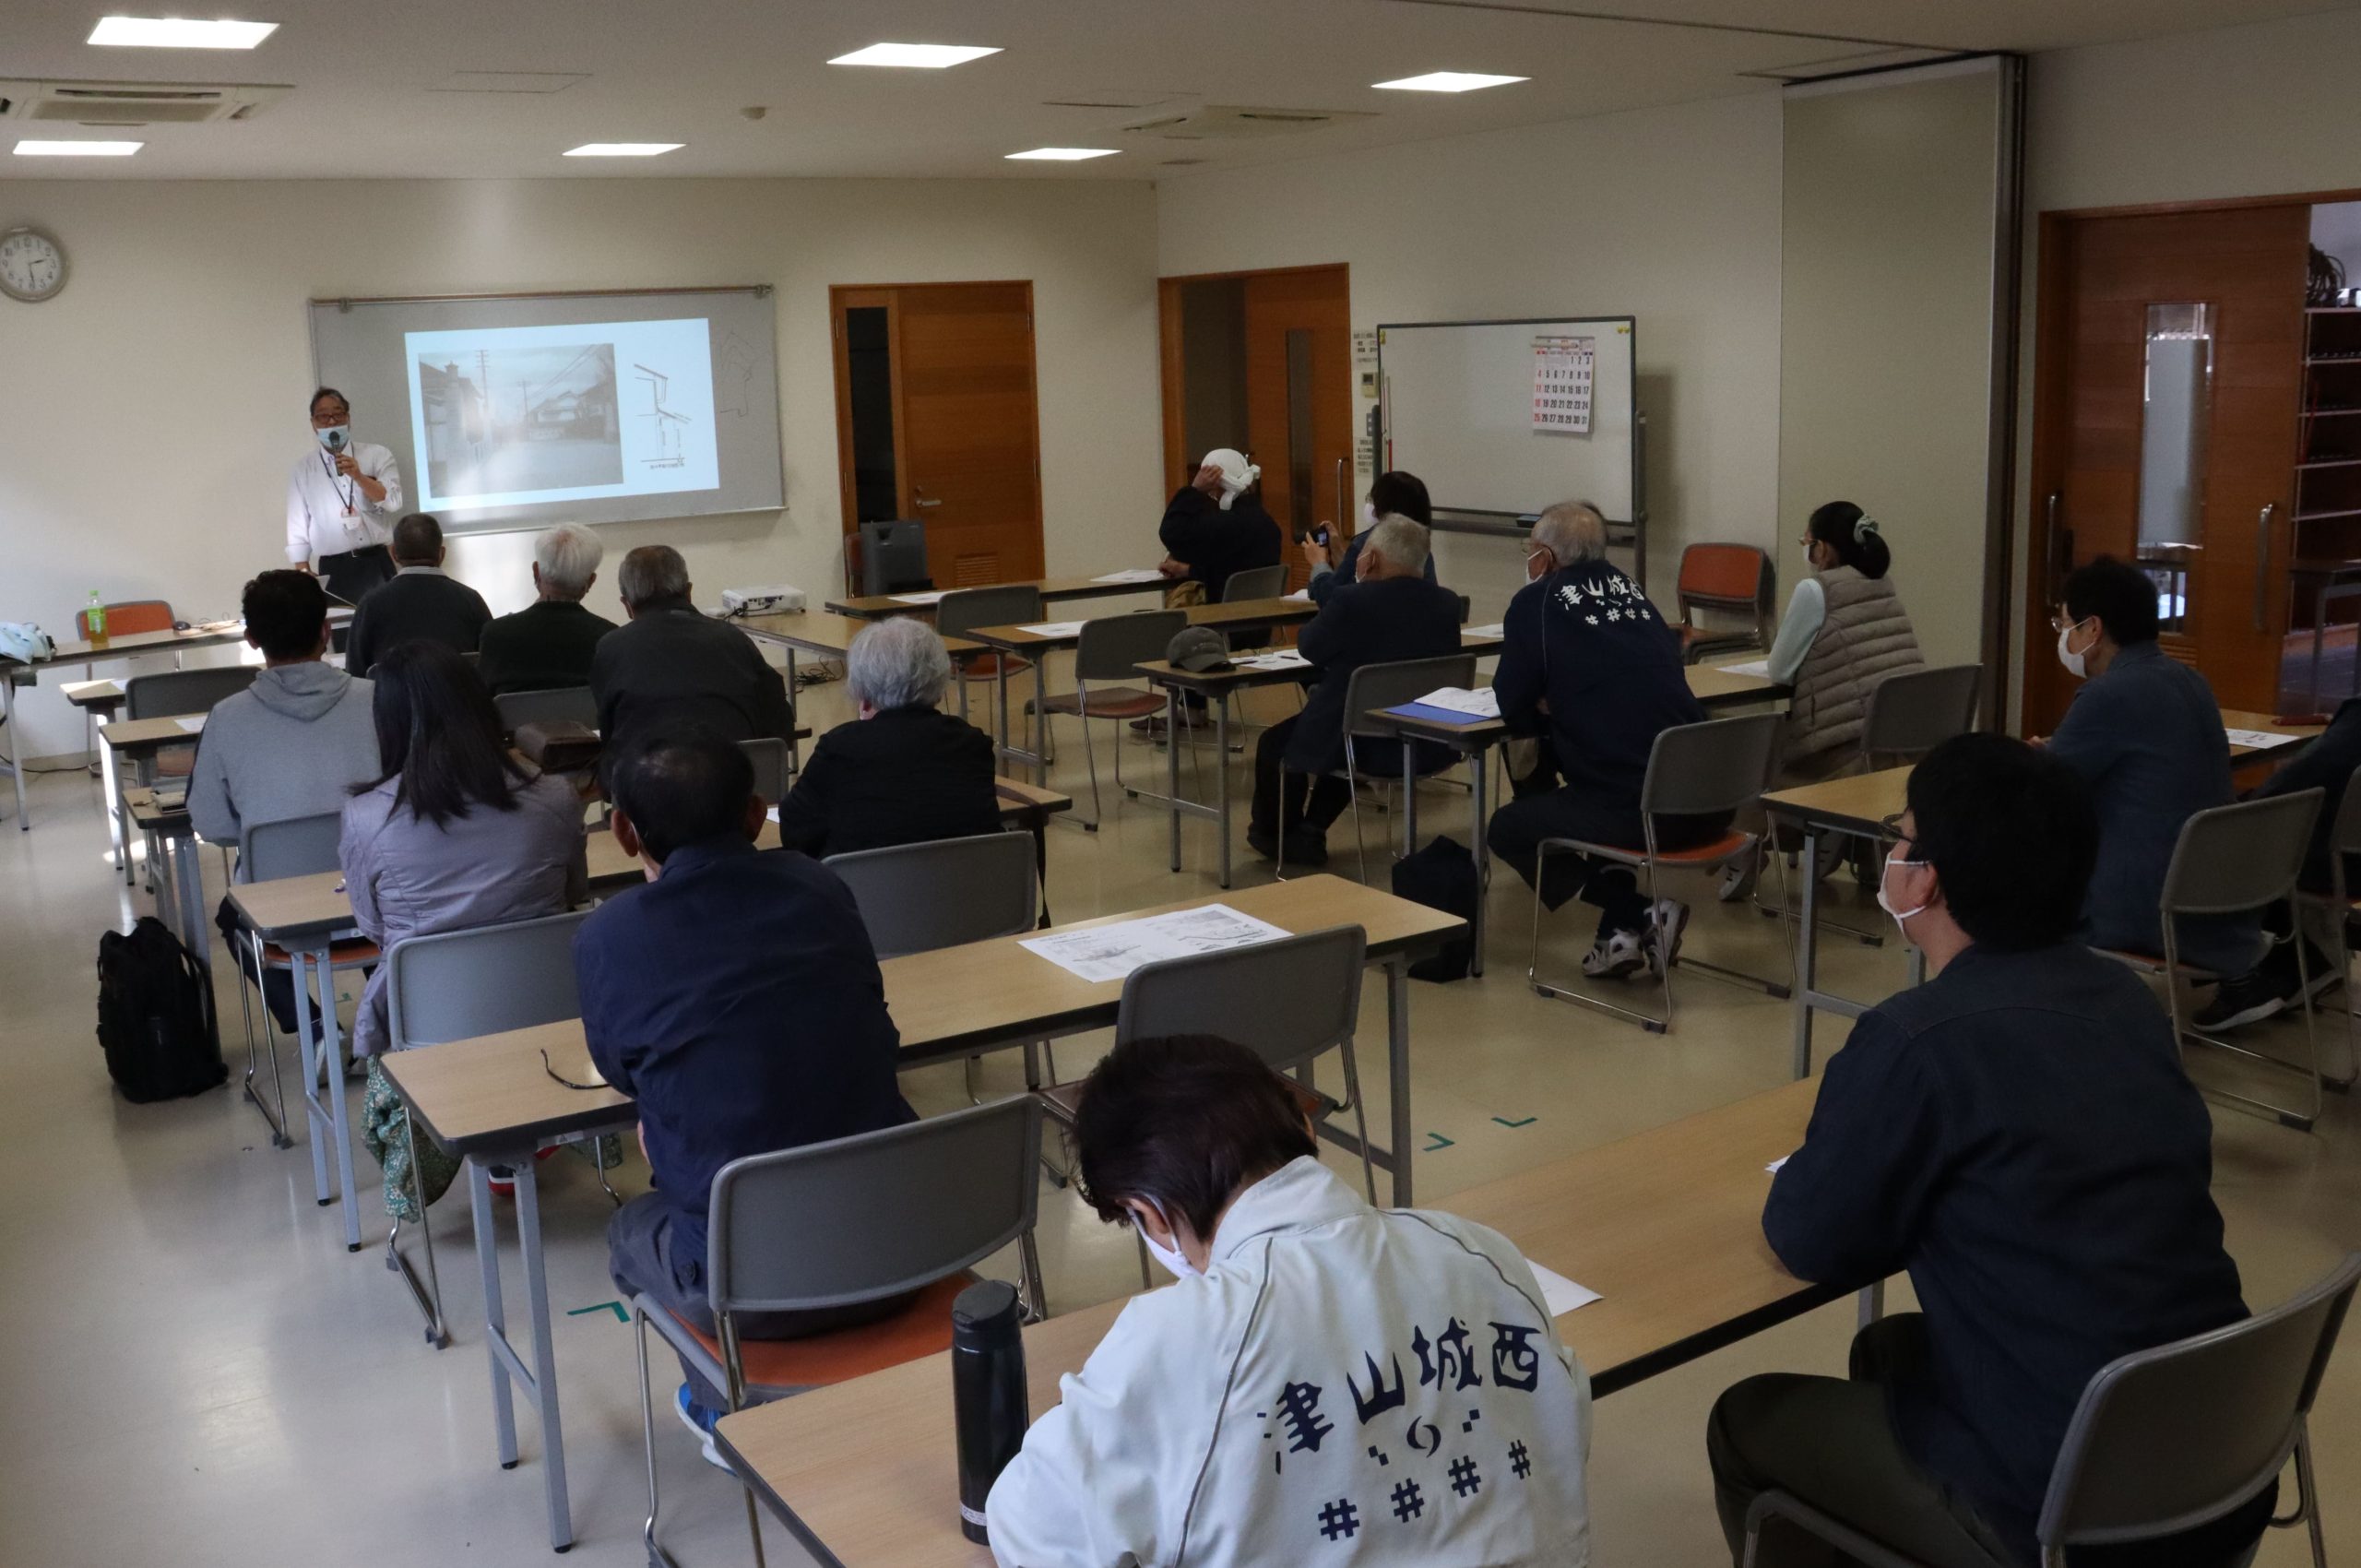 本年度第１回の城西歴史講座が小田中の城西公民館で開かれた。江戸時代から現代に至るまでの城西地区の建造物や町並みの変遷について学んだ。